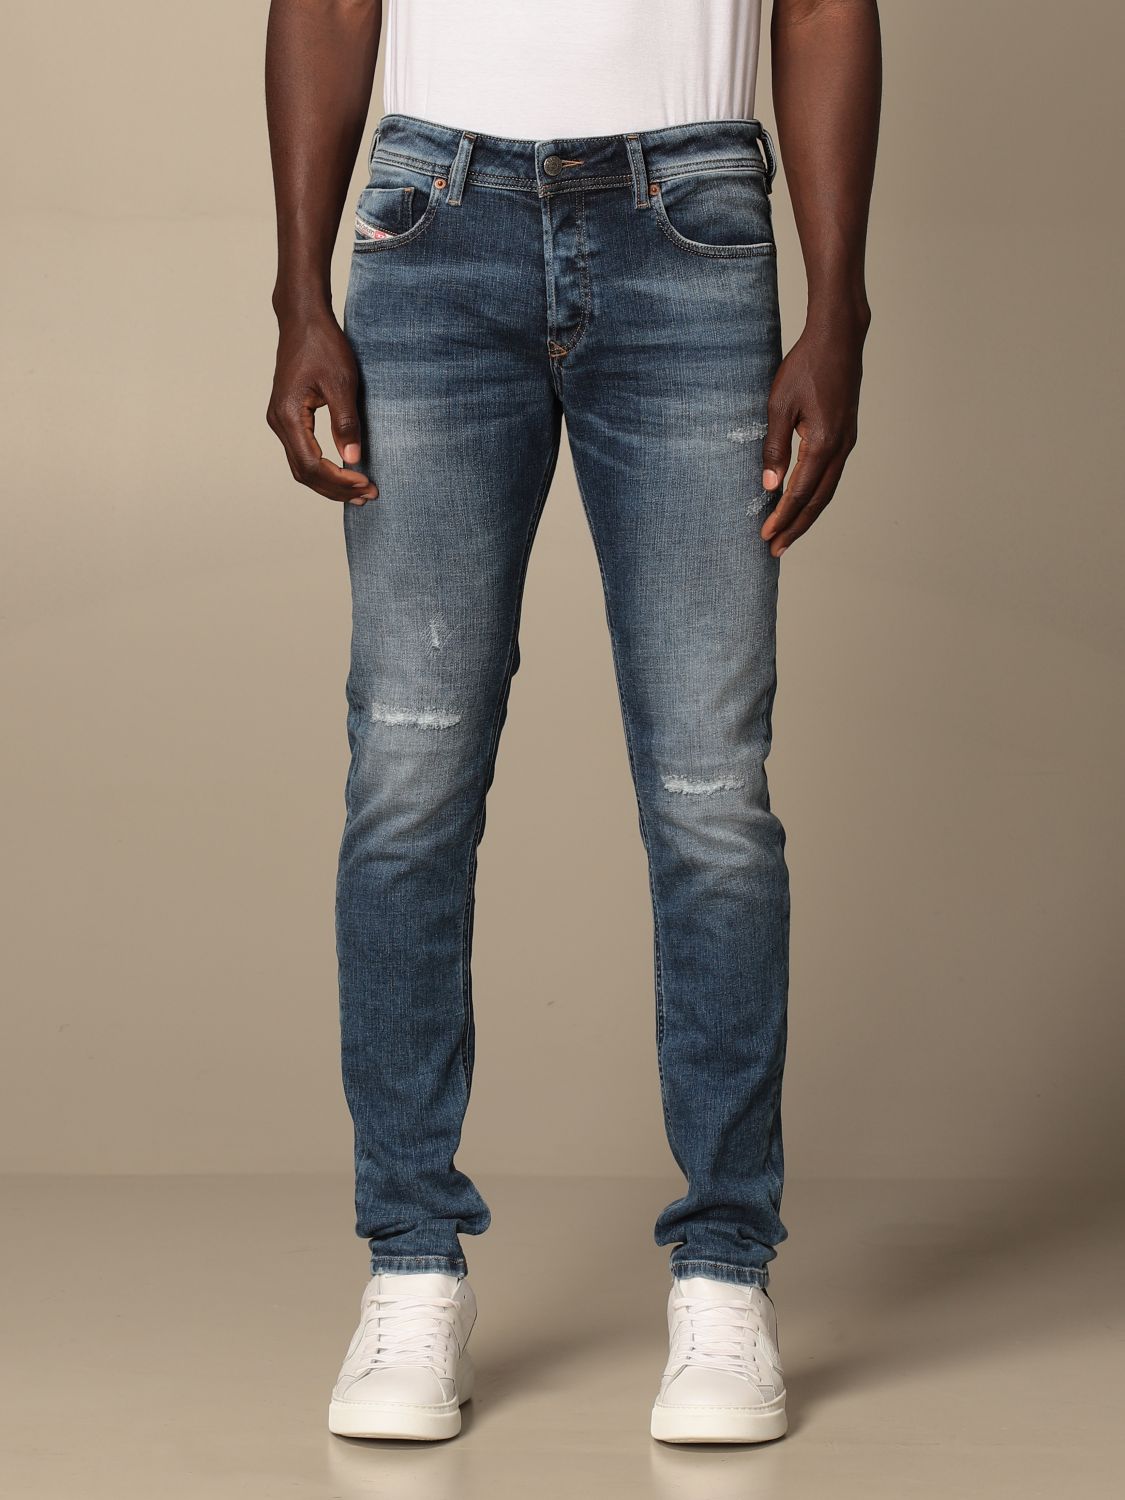 roem Artistiek Renovatie DIESEL: Sleenker-x 5-pocket skinny stretch jeans - Denim | Diesel jeans  00SWJF 009PN online on GIGLIO.COM